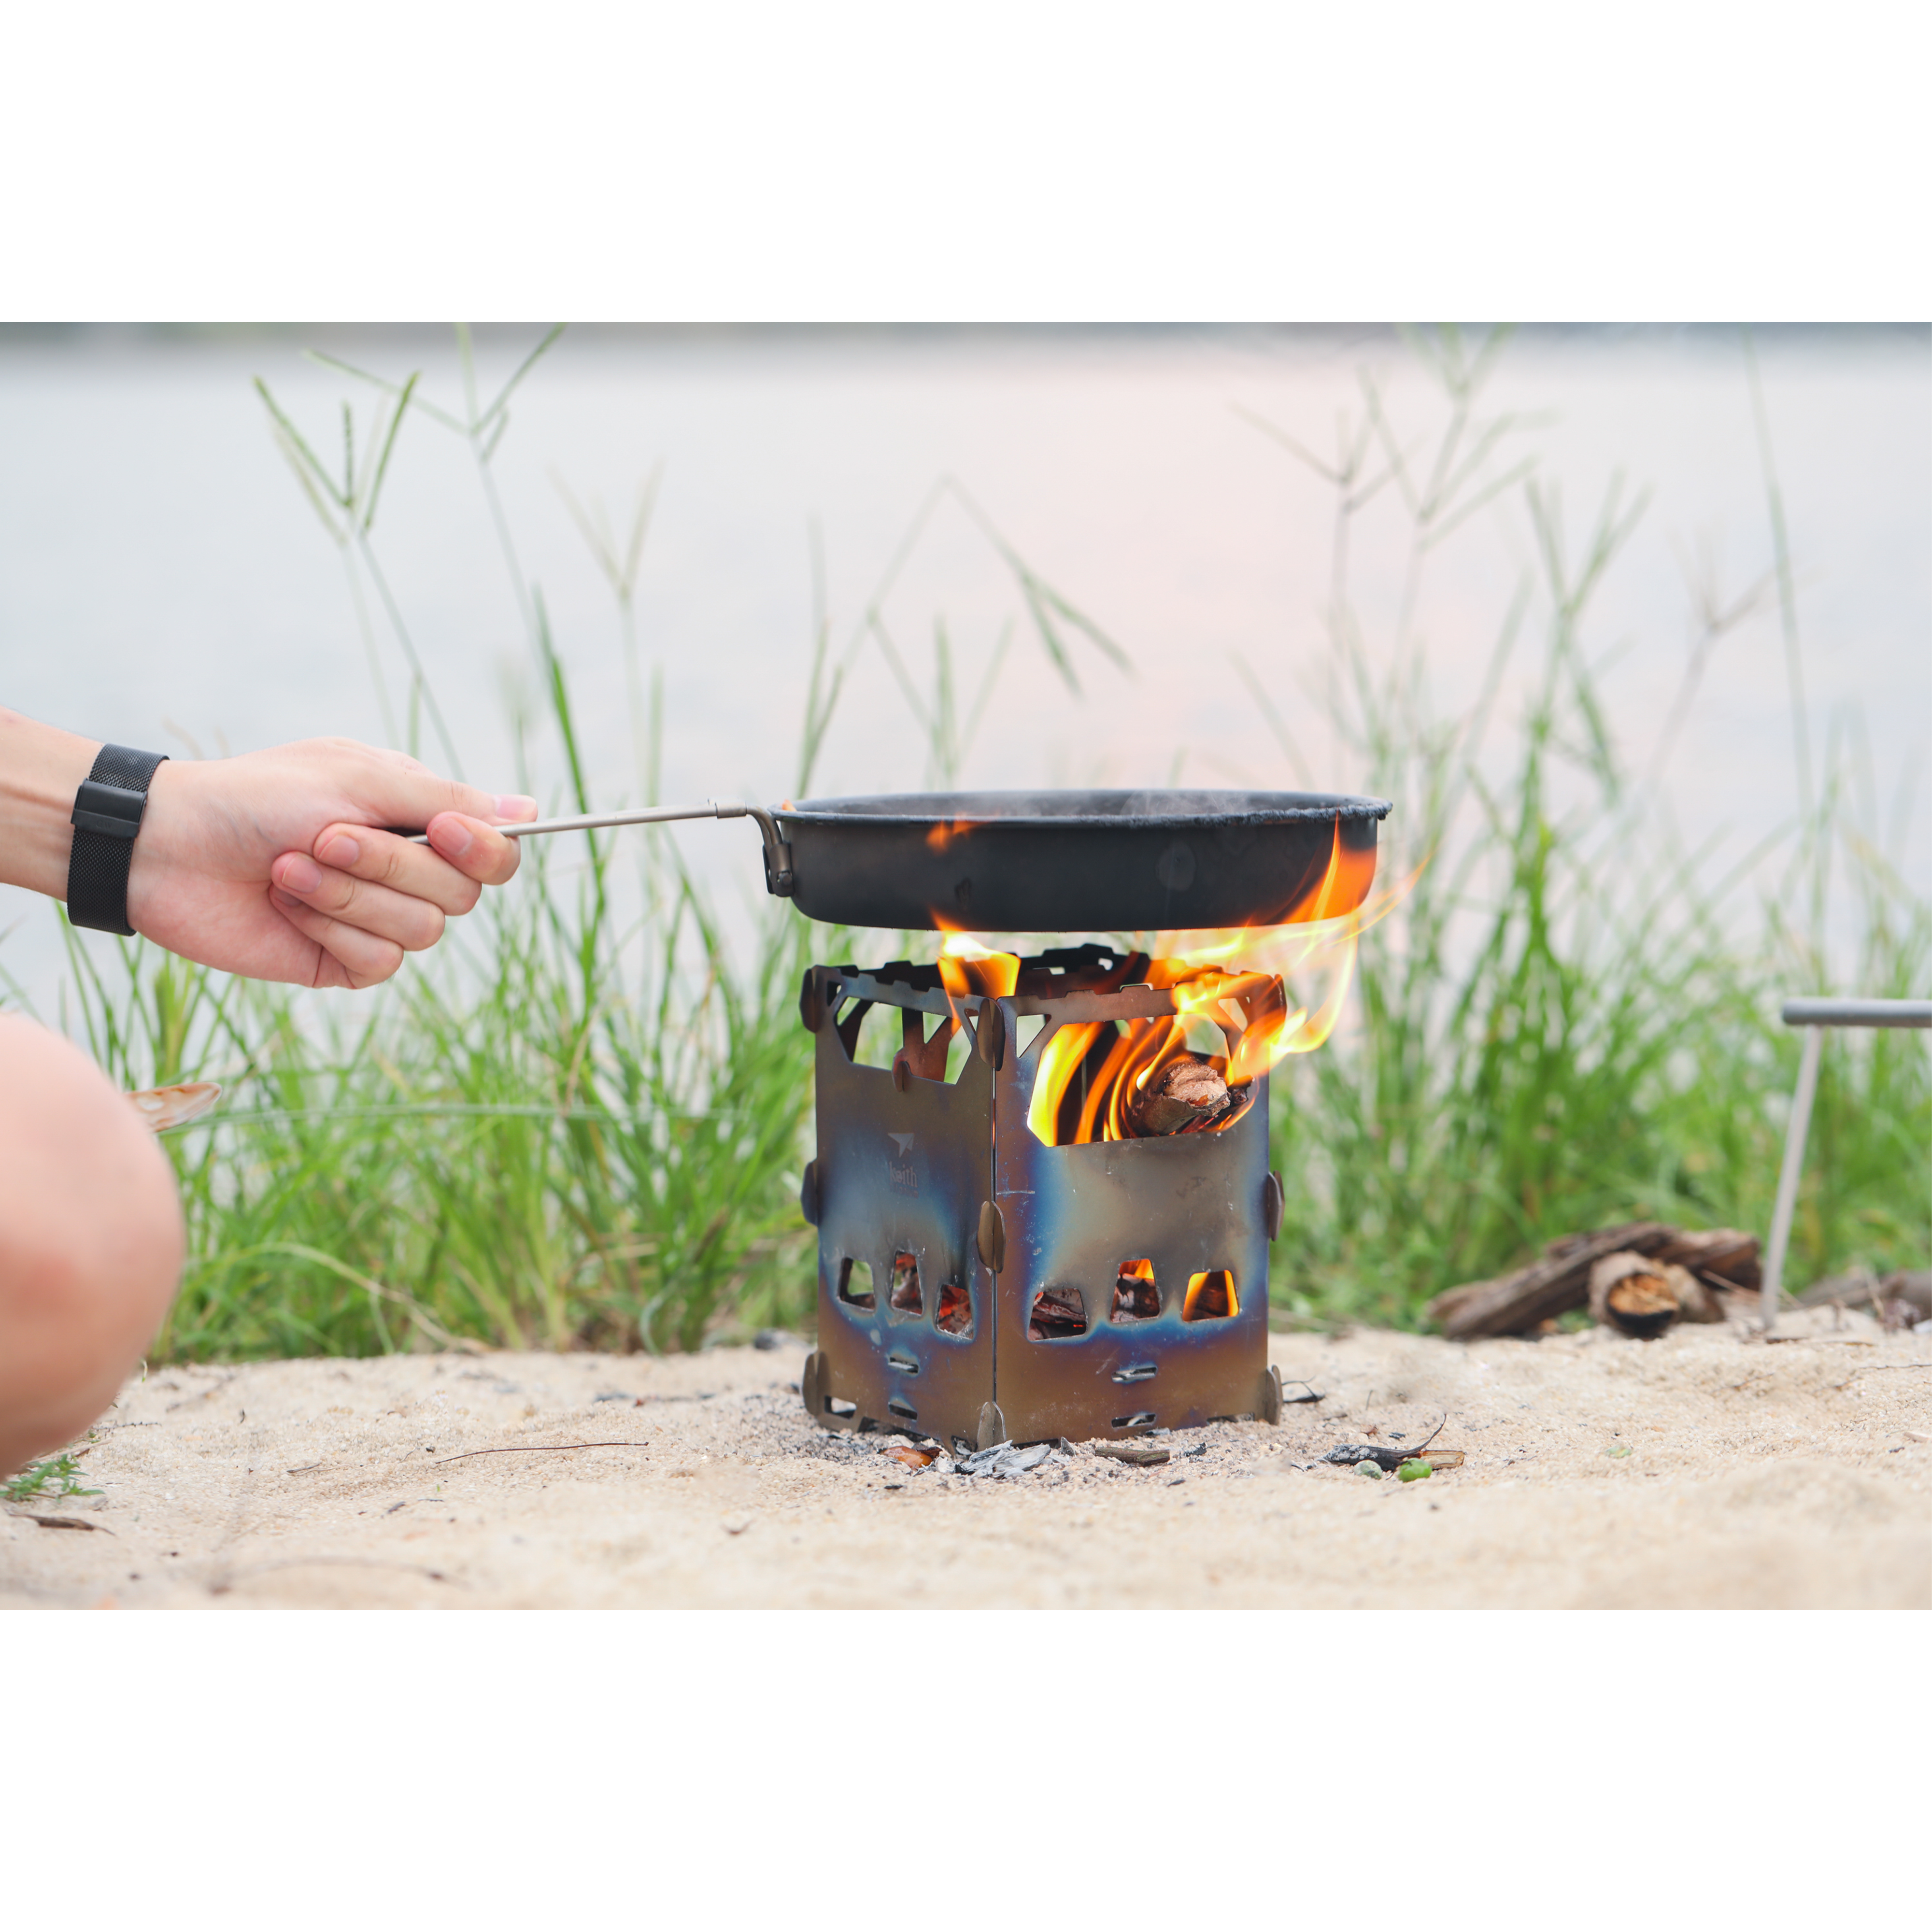 A importância da resistência à corrosão para utensílios de camping

